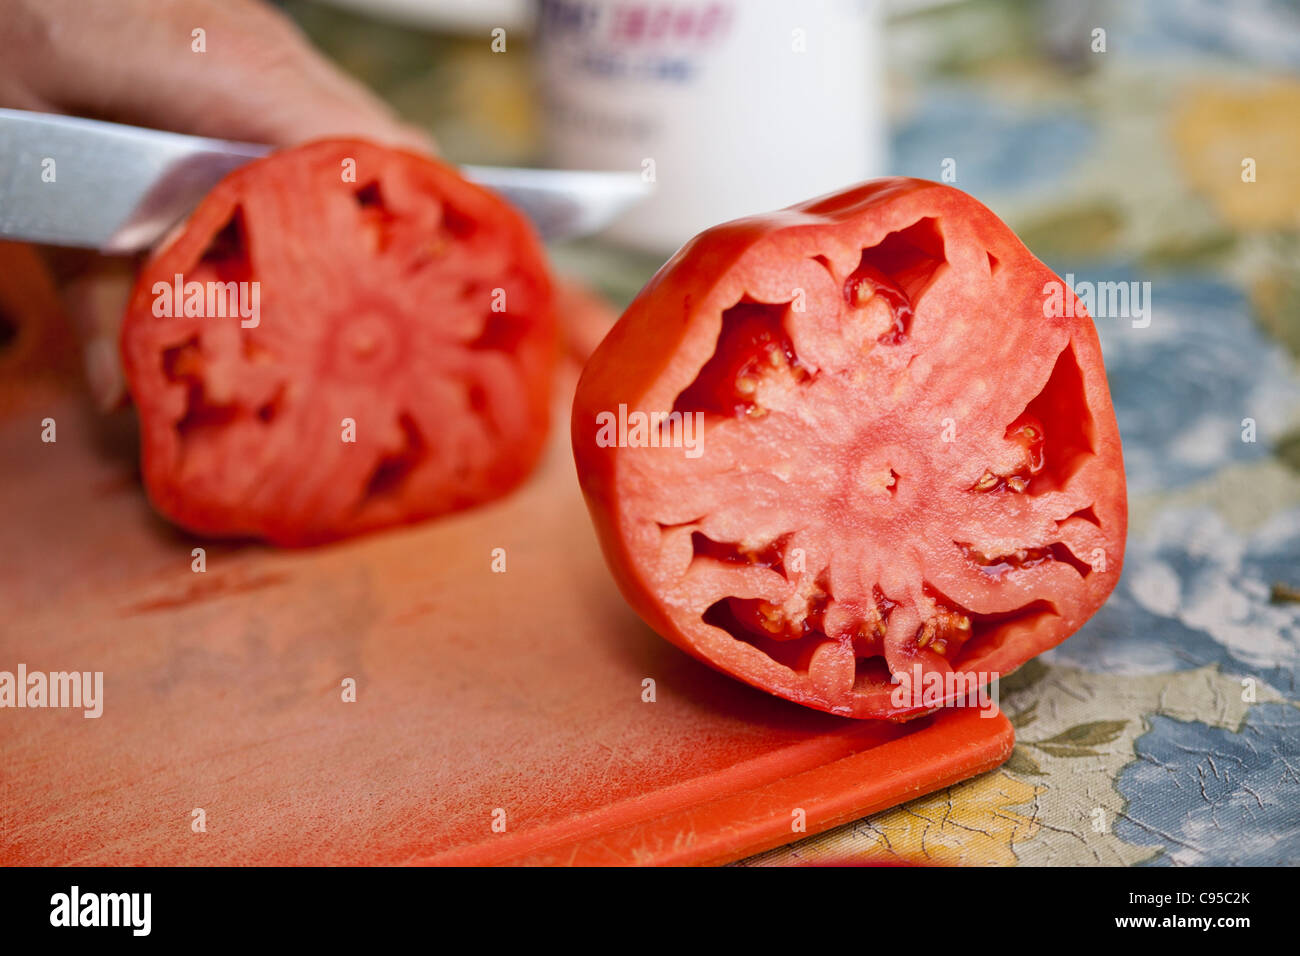 La mitad de un tomate Oxheart carnoso. Una gran muestra de tomate corazón de buey se redujo a la mitad, mientras que la otra mitad está cortada en el fondo Foto de stock